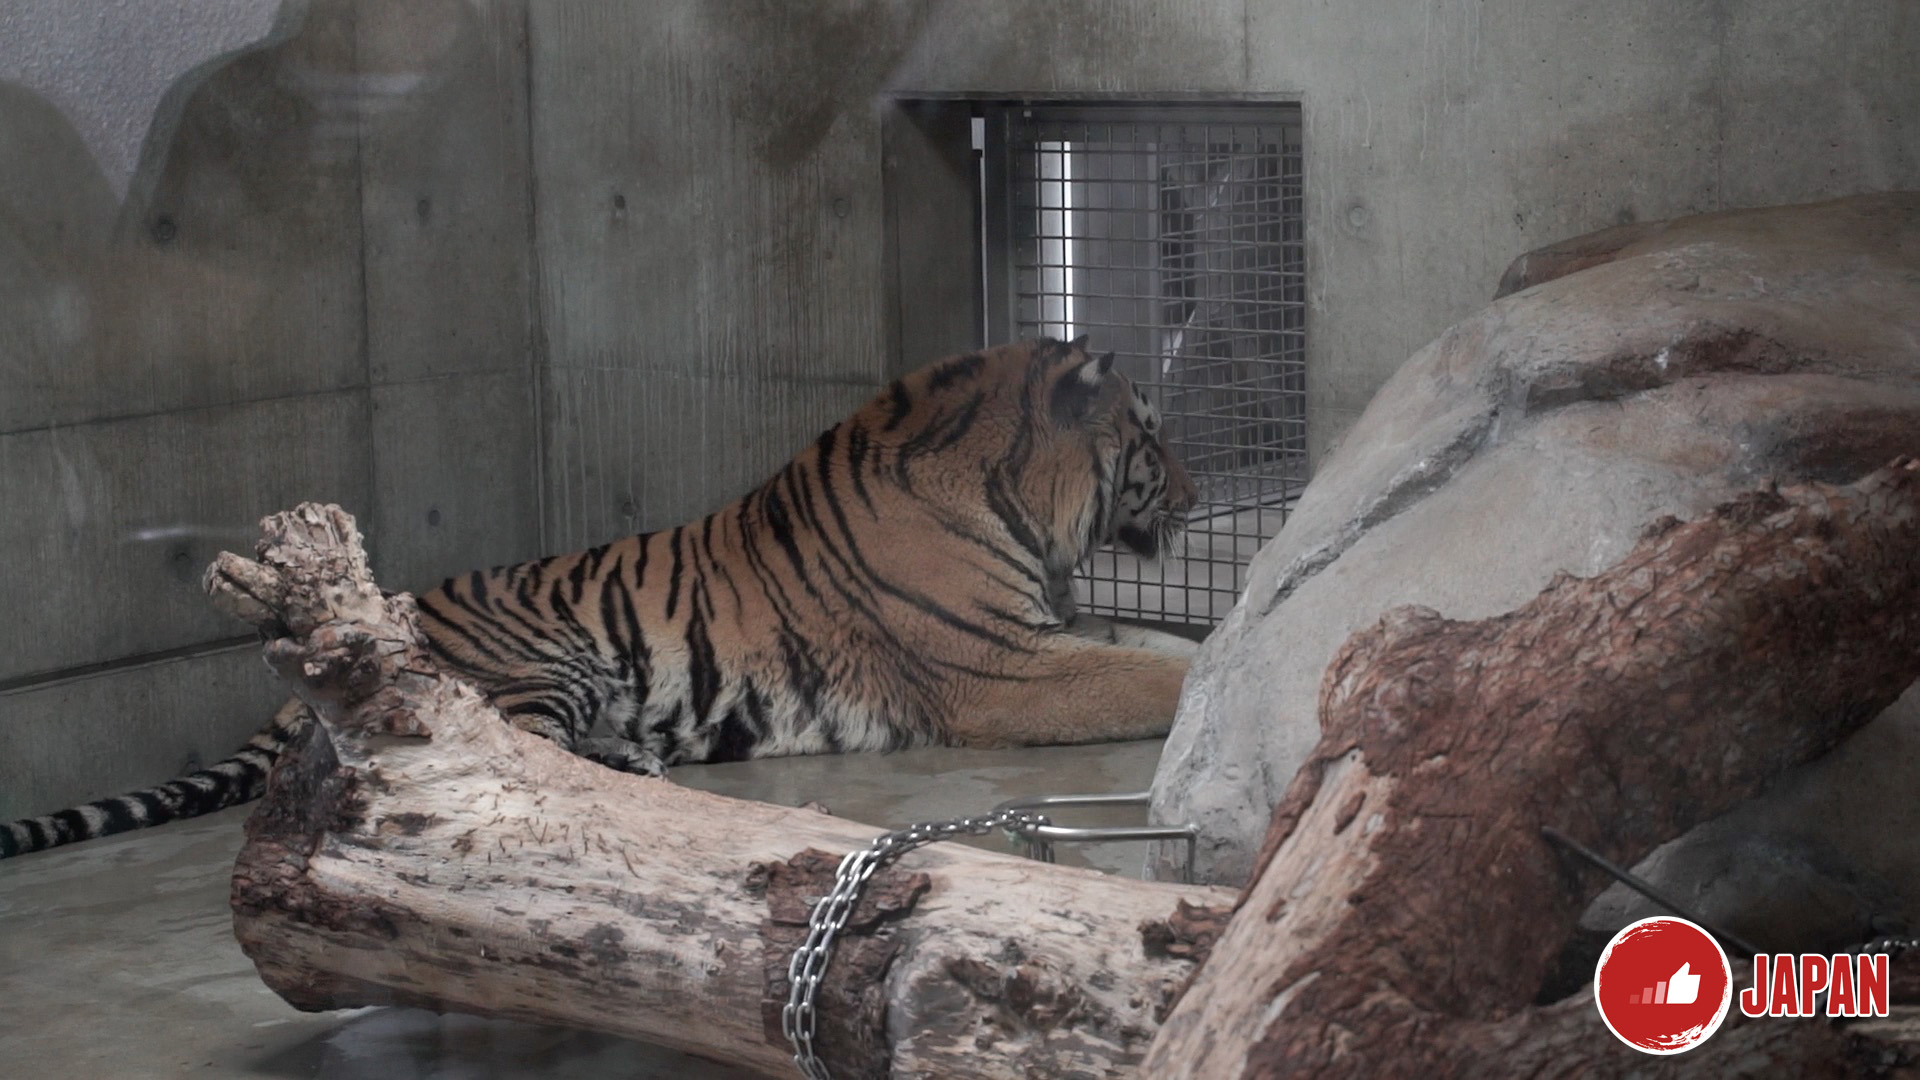 【大阪旅遊】大阪周遊卡免費景點推介5－大阪動物園